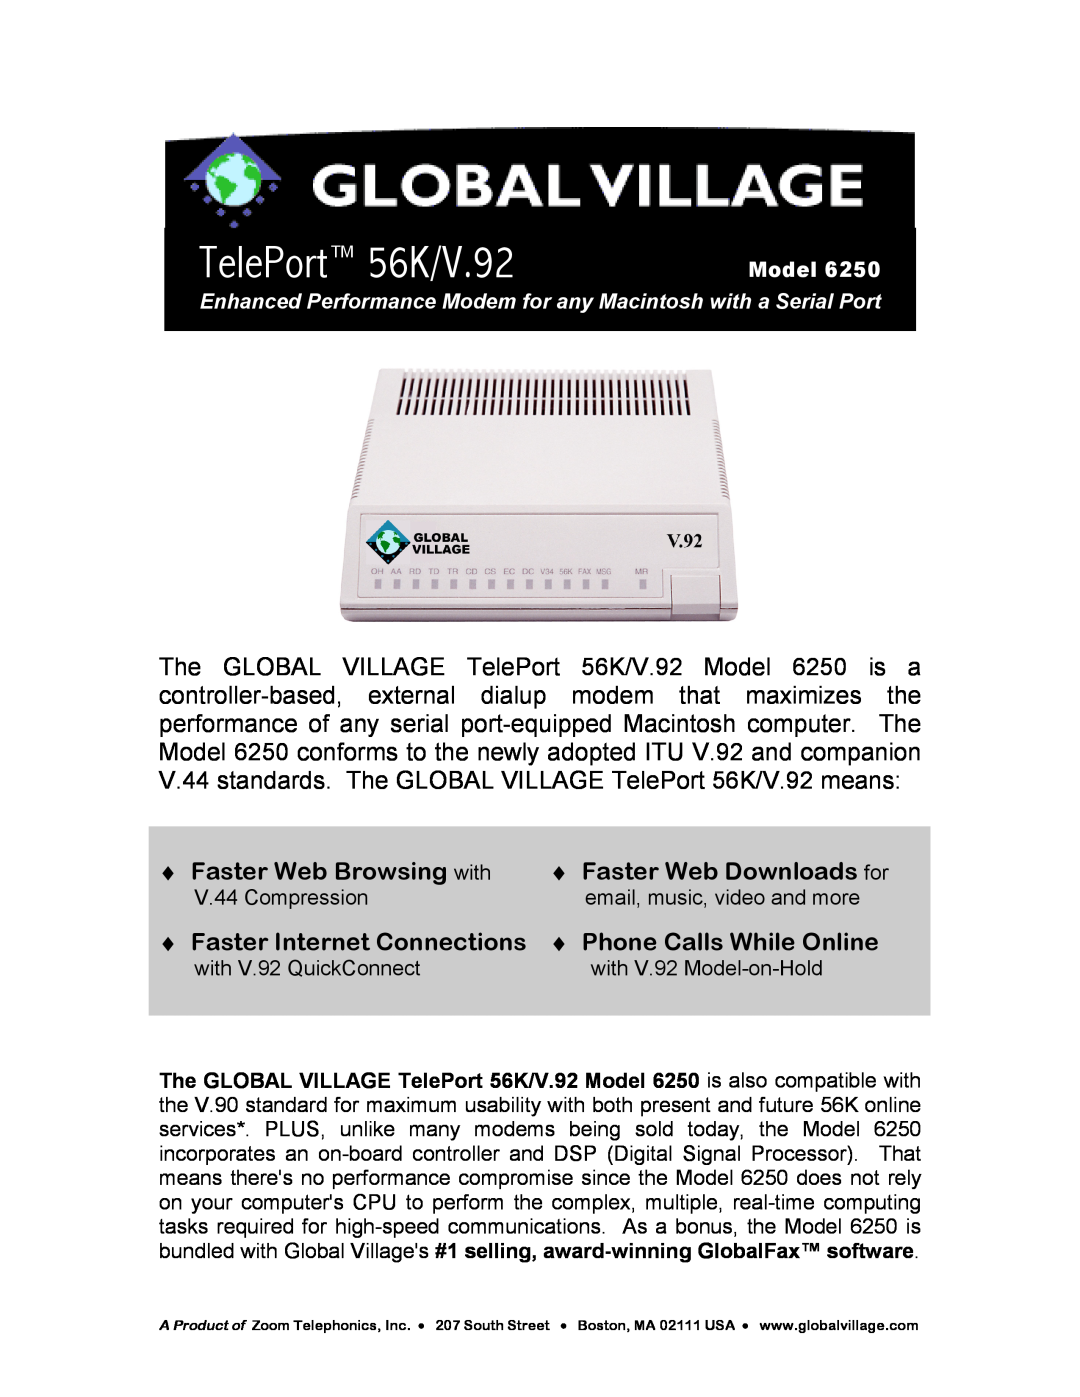 Zoom 6250 manual Model, V.44 standards. The GLOBAL VILLAGE TelePort 56K/V.92 means, Faster Web Browsing with 